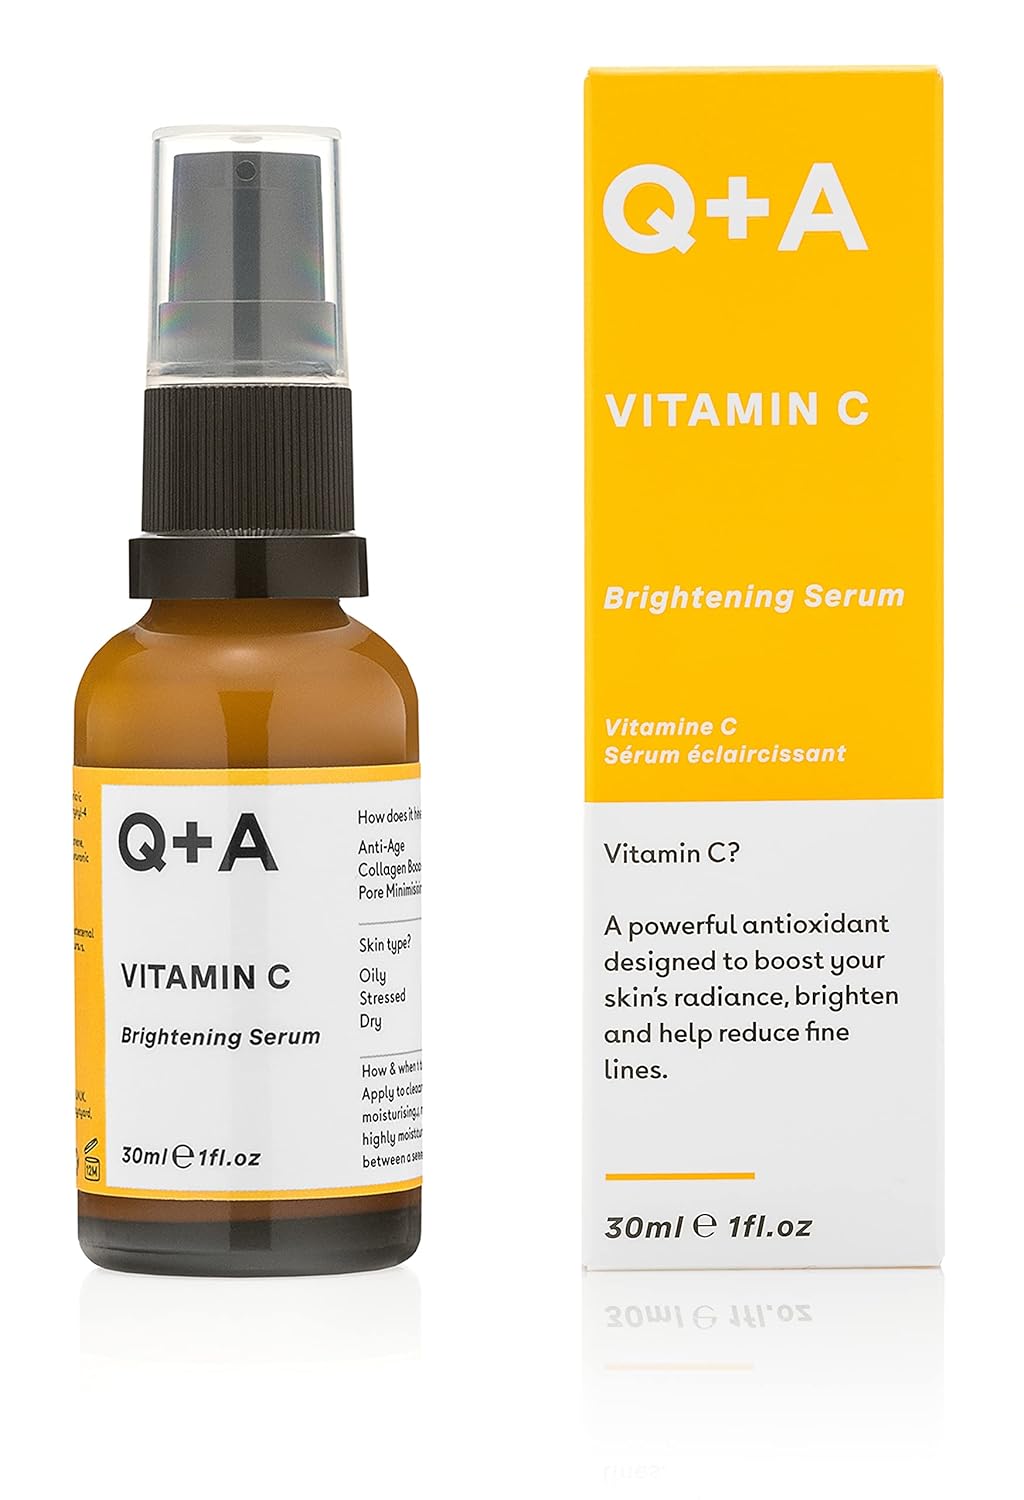 Q+A Vitamin C Brightening Serum, 30